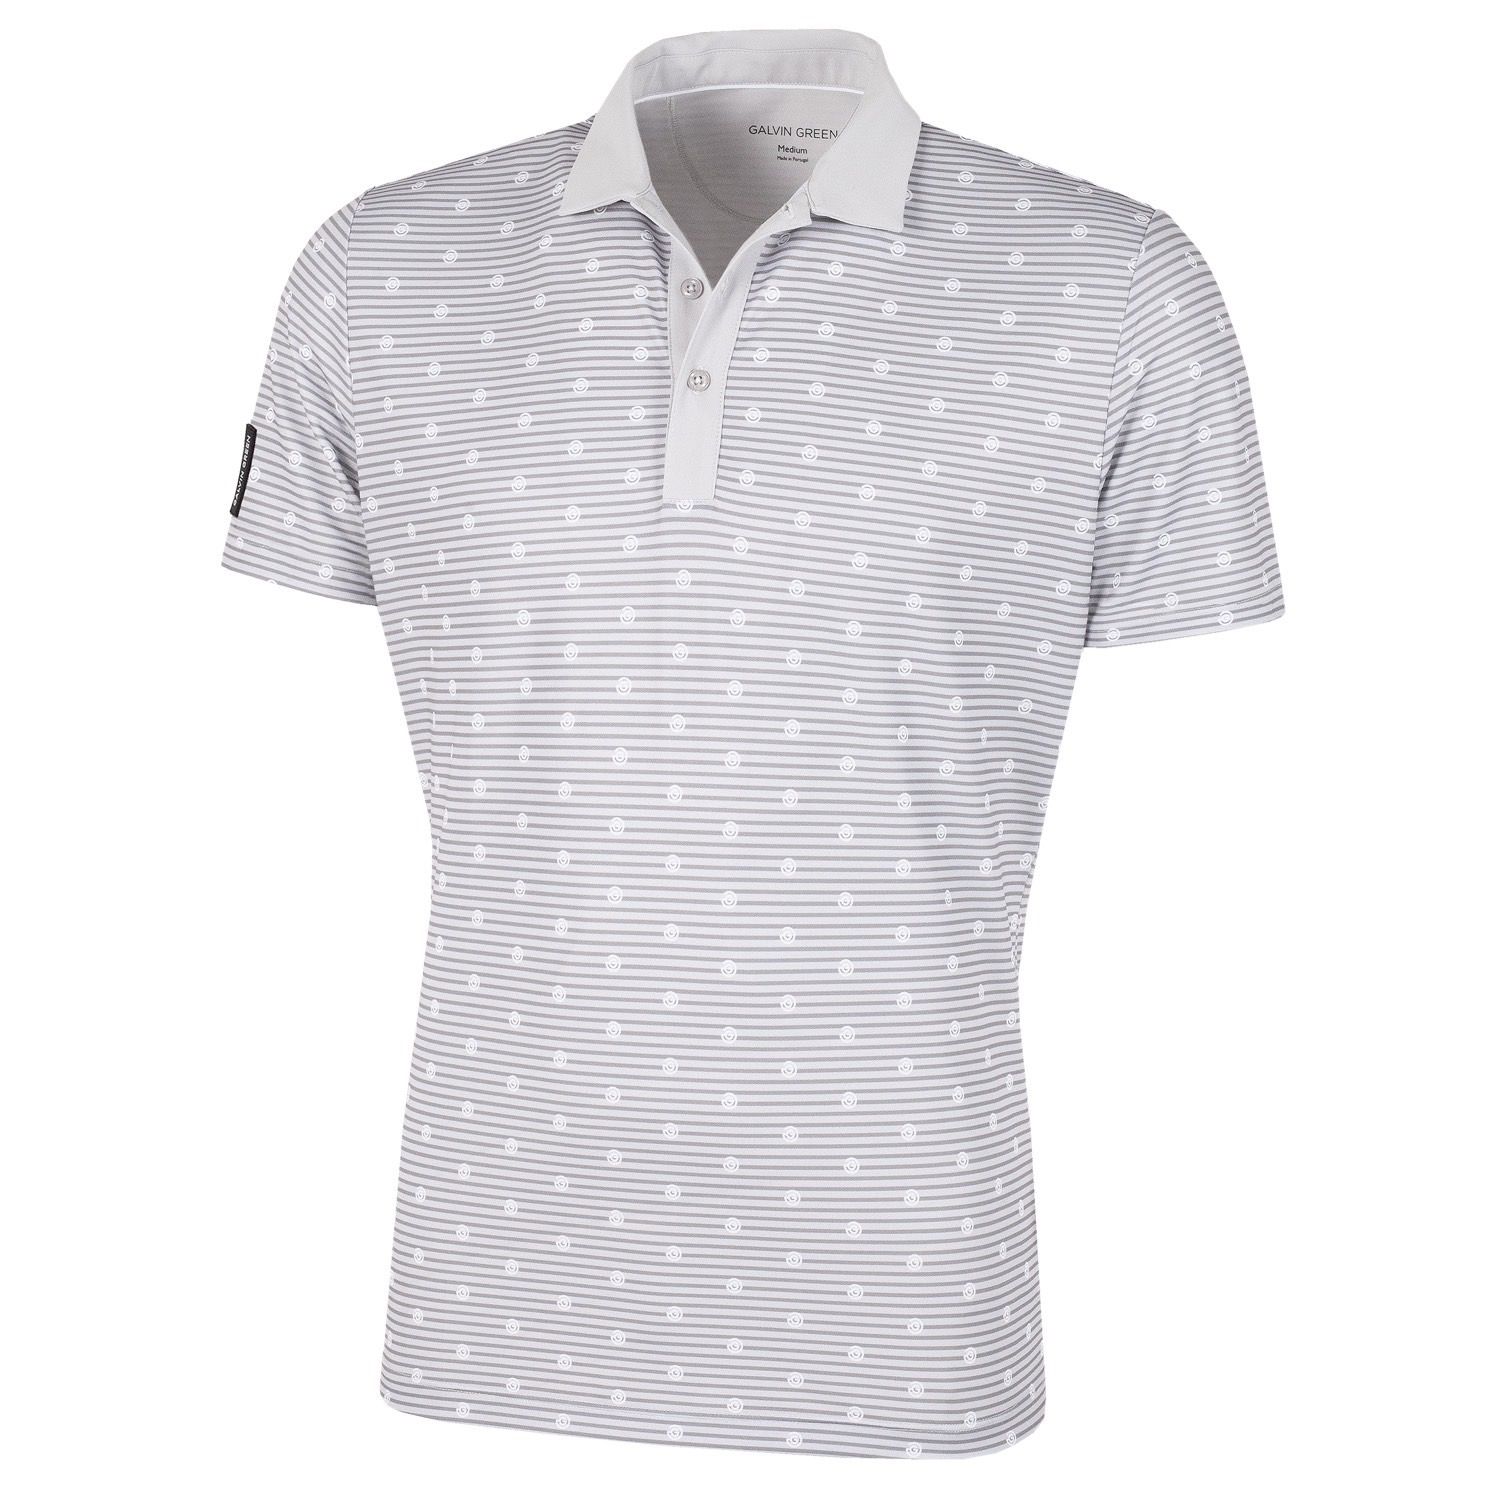 Galvin Green Monty Ventil8 Plus Polo Shirt White/Cool Grey | Scottsdale ...